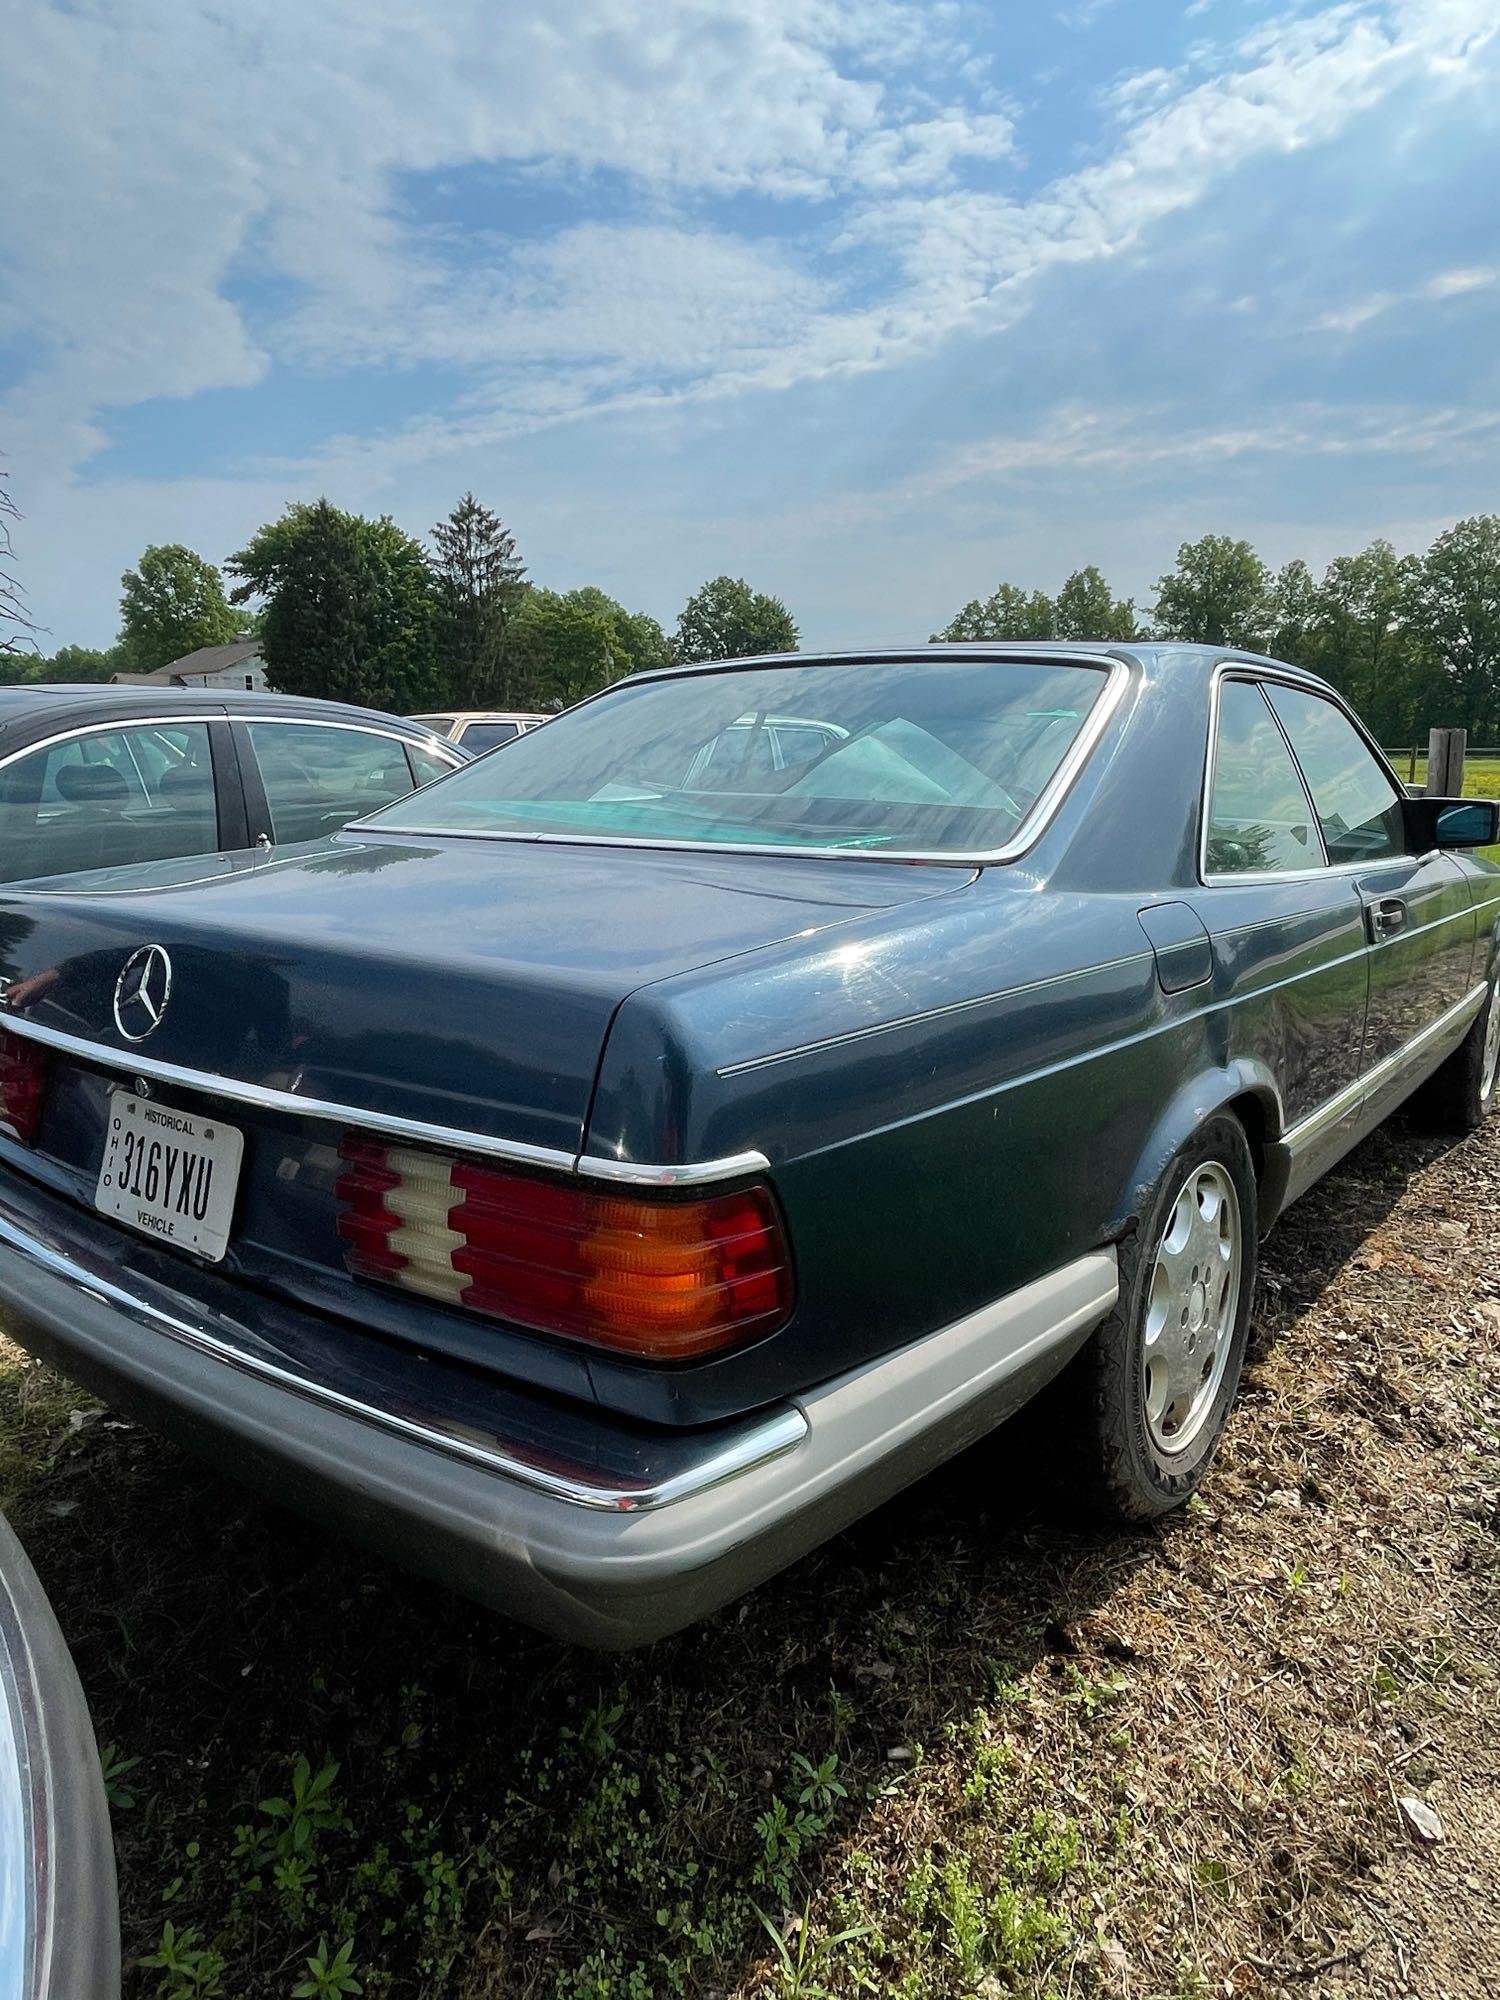 1983 Mercedes Benz 380 SEC, 38C, 2 Door, Auto, Runs, 148K